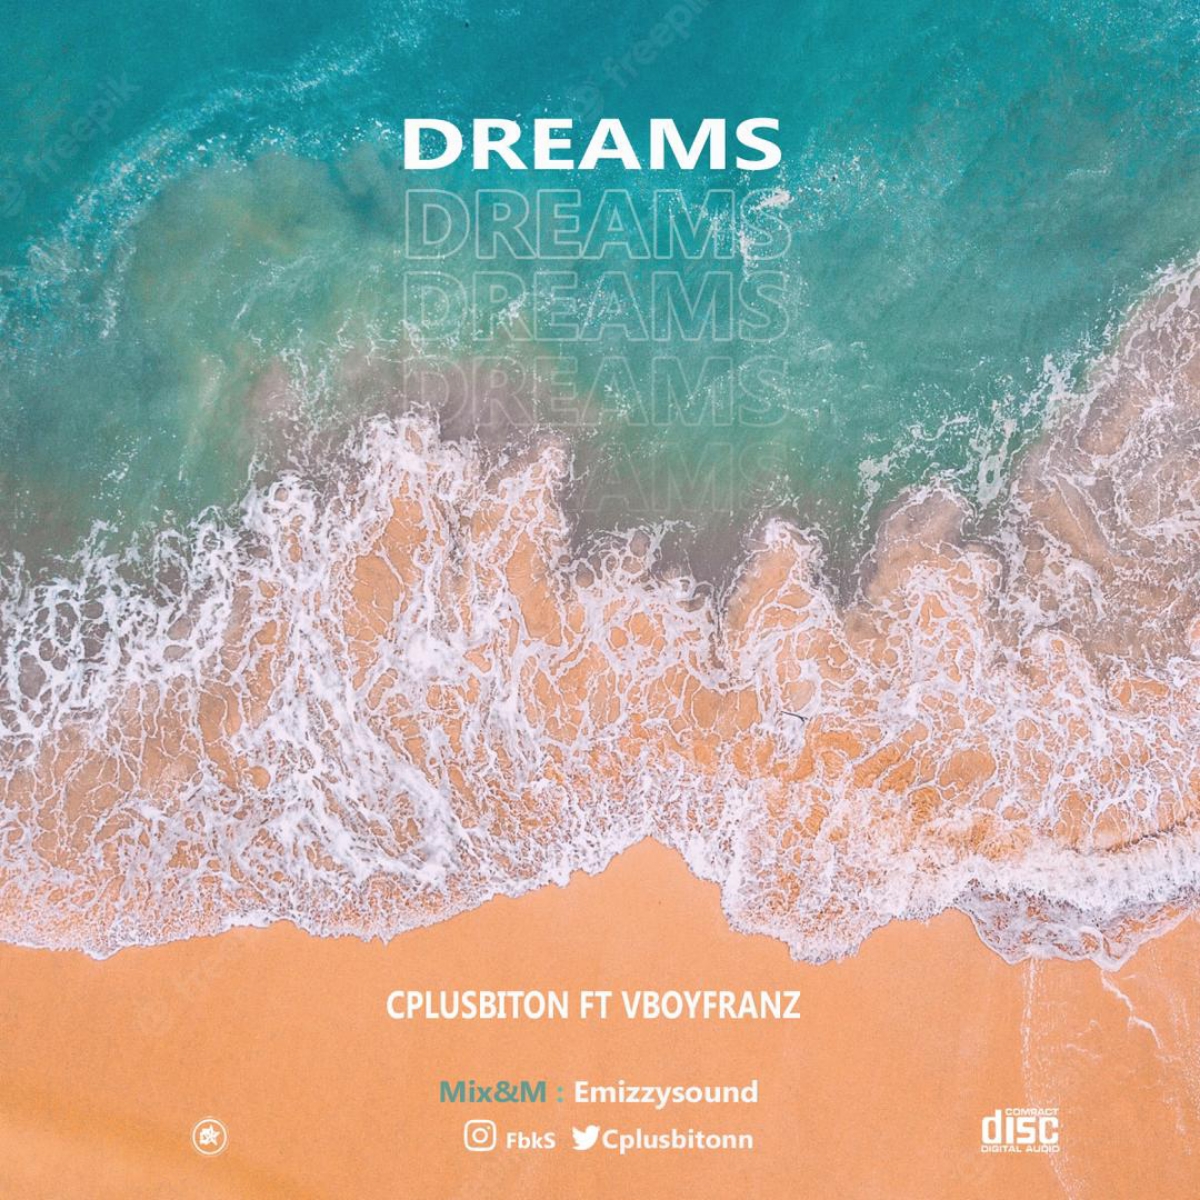 Cplusbiton -"Dreams" Feat Vboyfranz 1